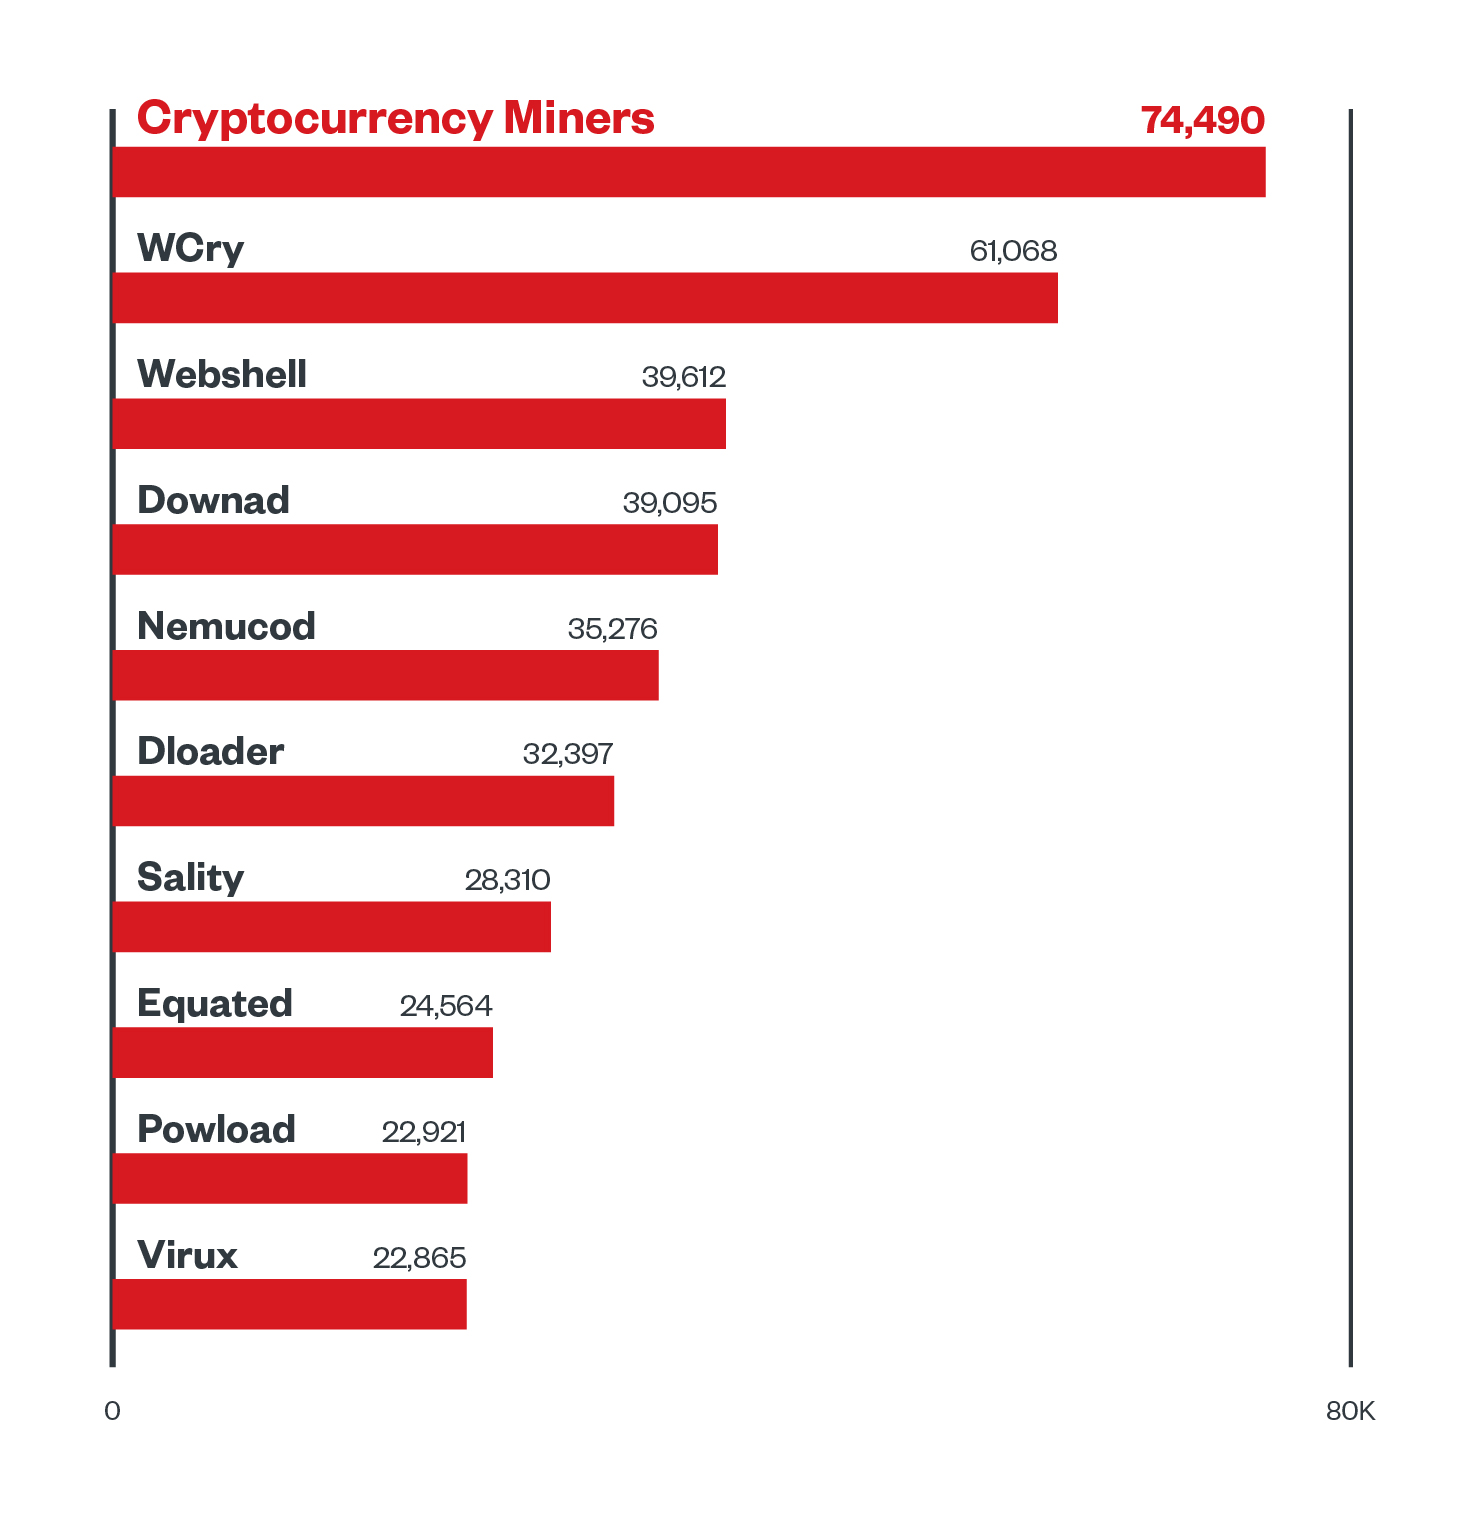 Bild 5. Kryptowährungs-Miner waren die am häufigsten entdeckte Malware: Die 10 am häufigsten entdeckten Malware-Familien in der ersten Hälfte des Jahres 2021